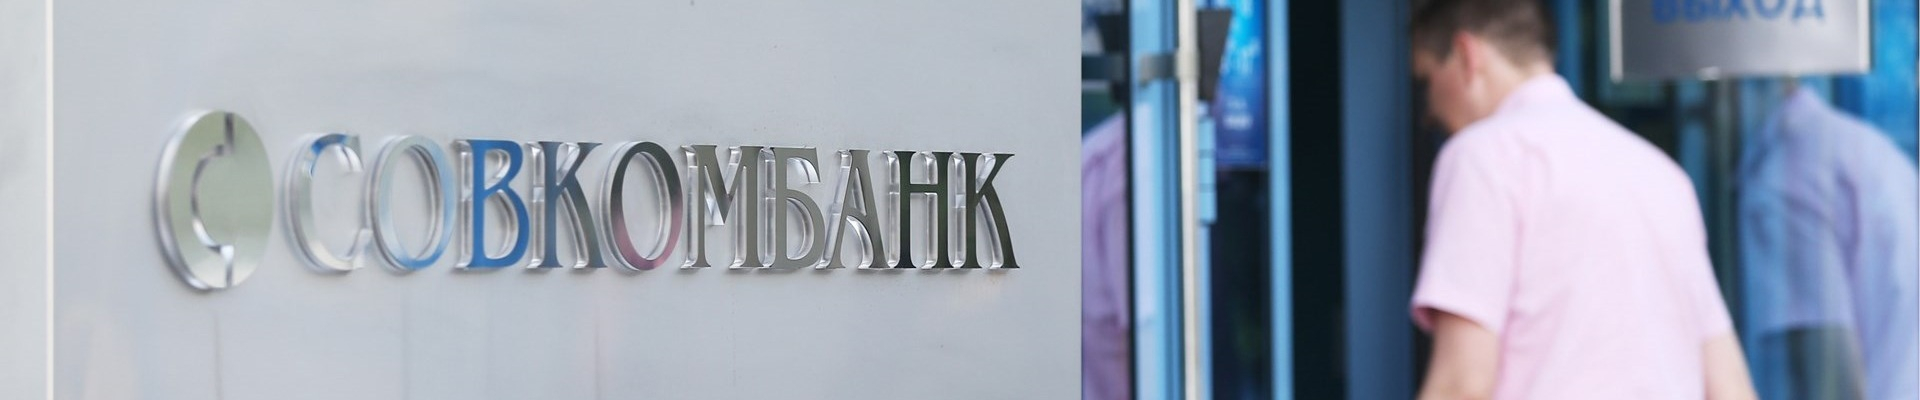 Центральный Банк привлекает к ответственности Совкомбанк за получение или предоставление кредитной информации незаконным образом